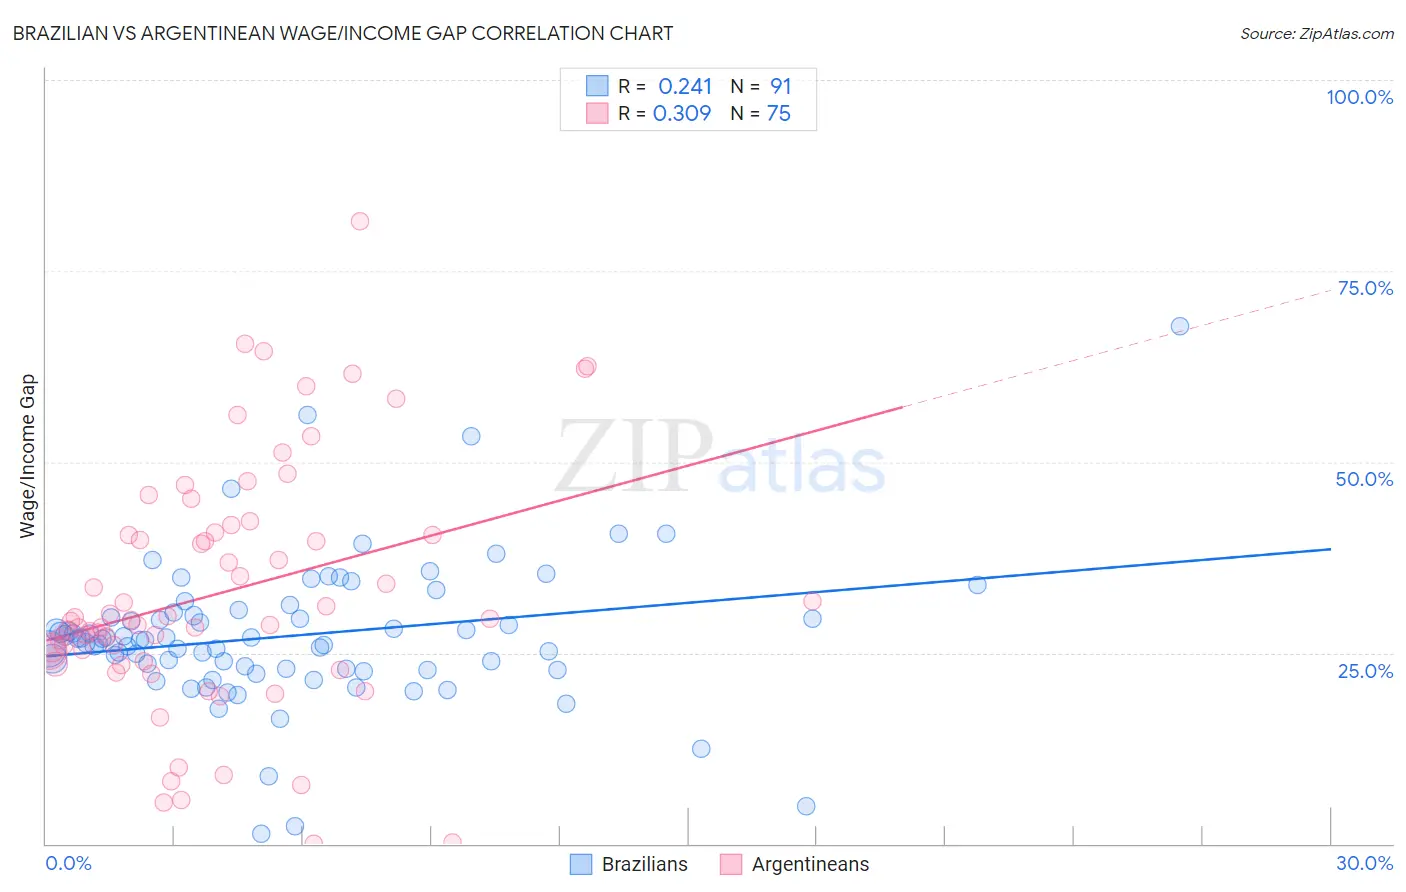 Brazilian vs Argentinean Wage/Income Gap